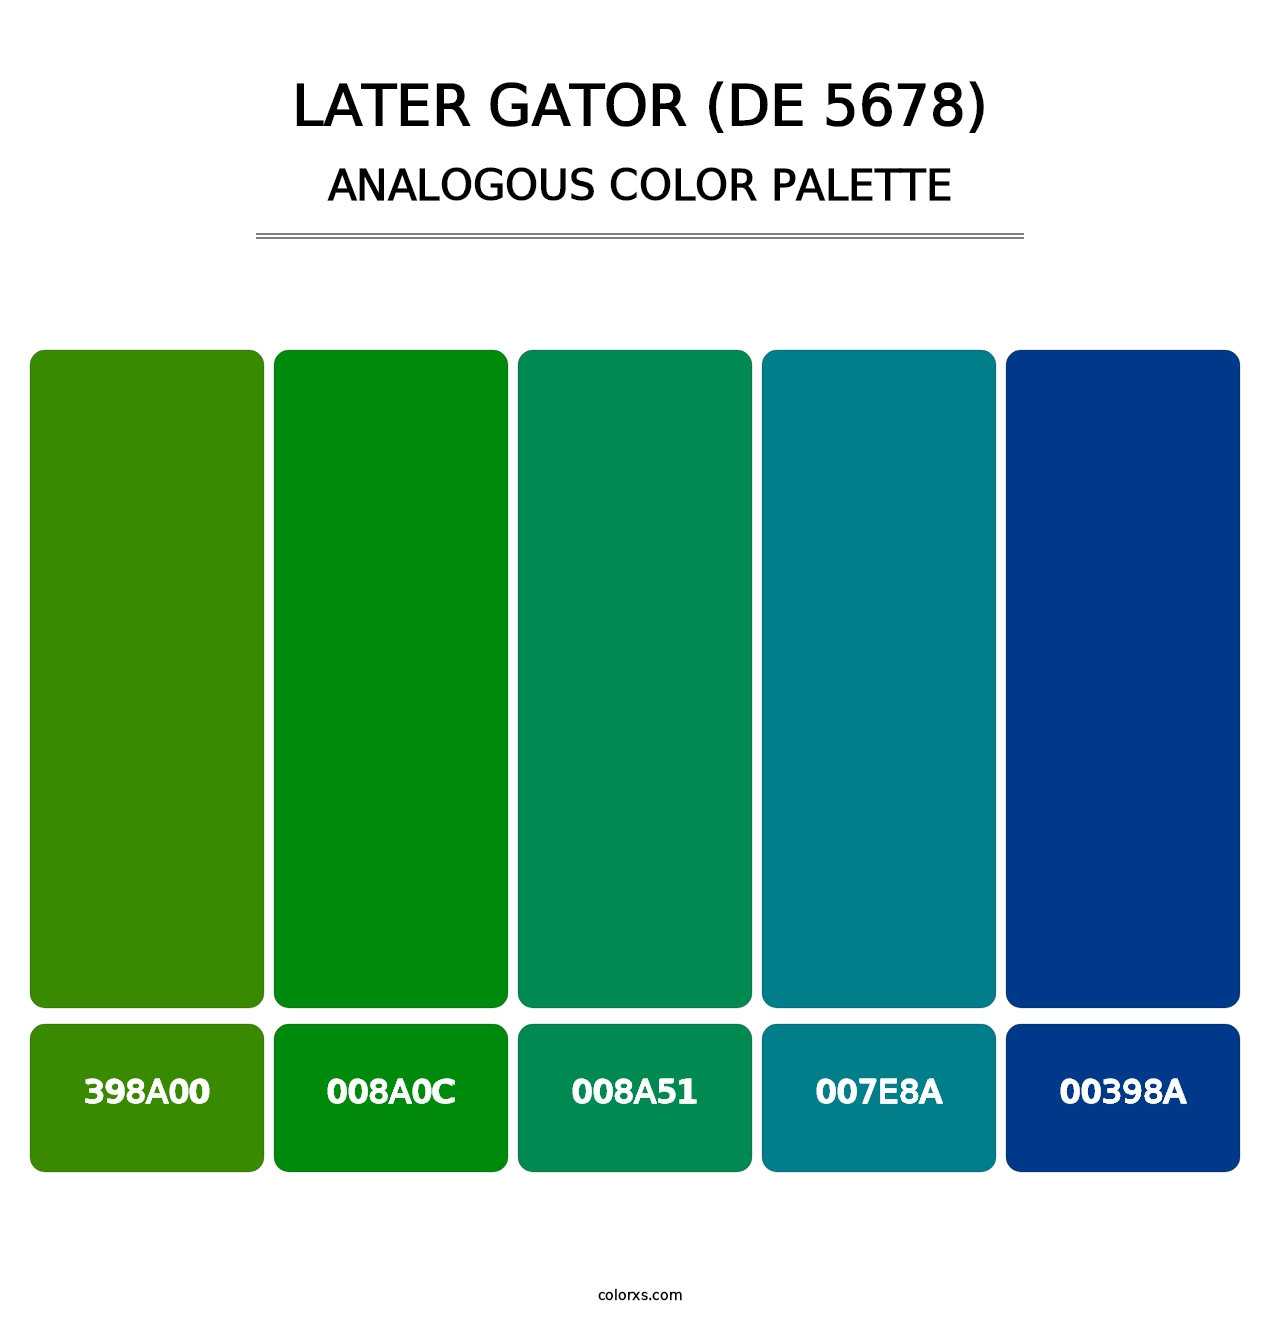 Later Gator (DE 5678) - Analogous Color Palette